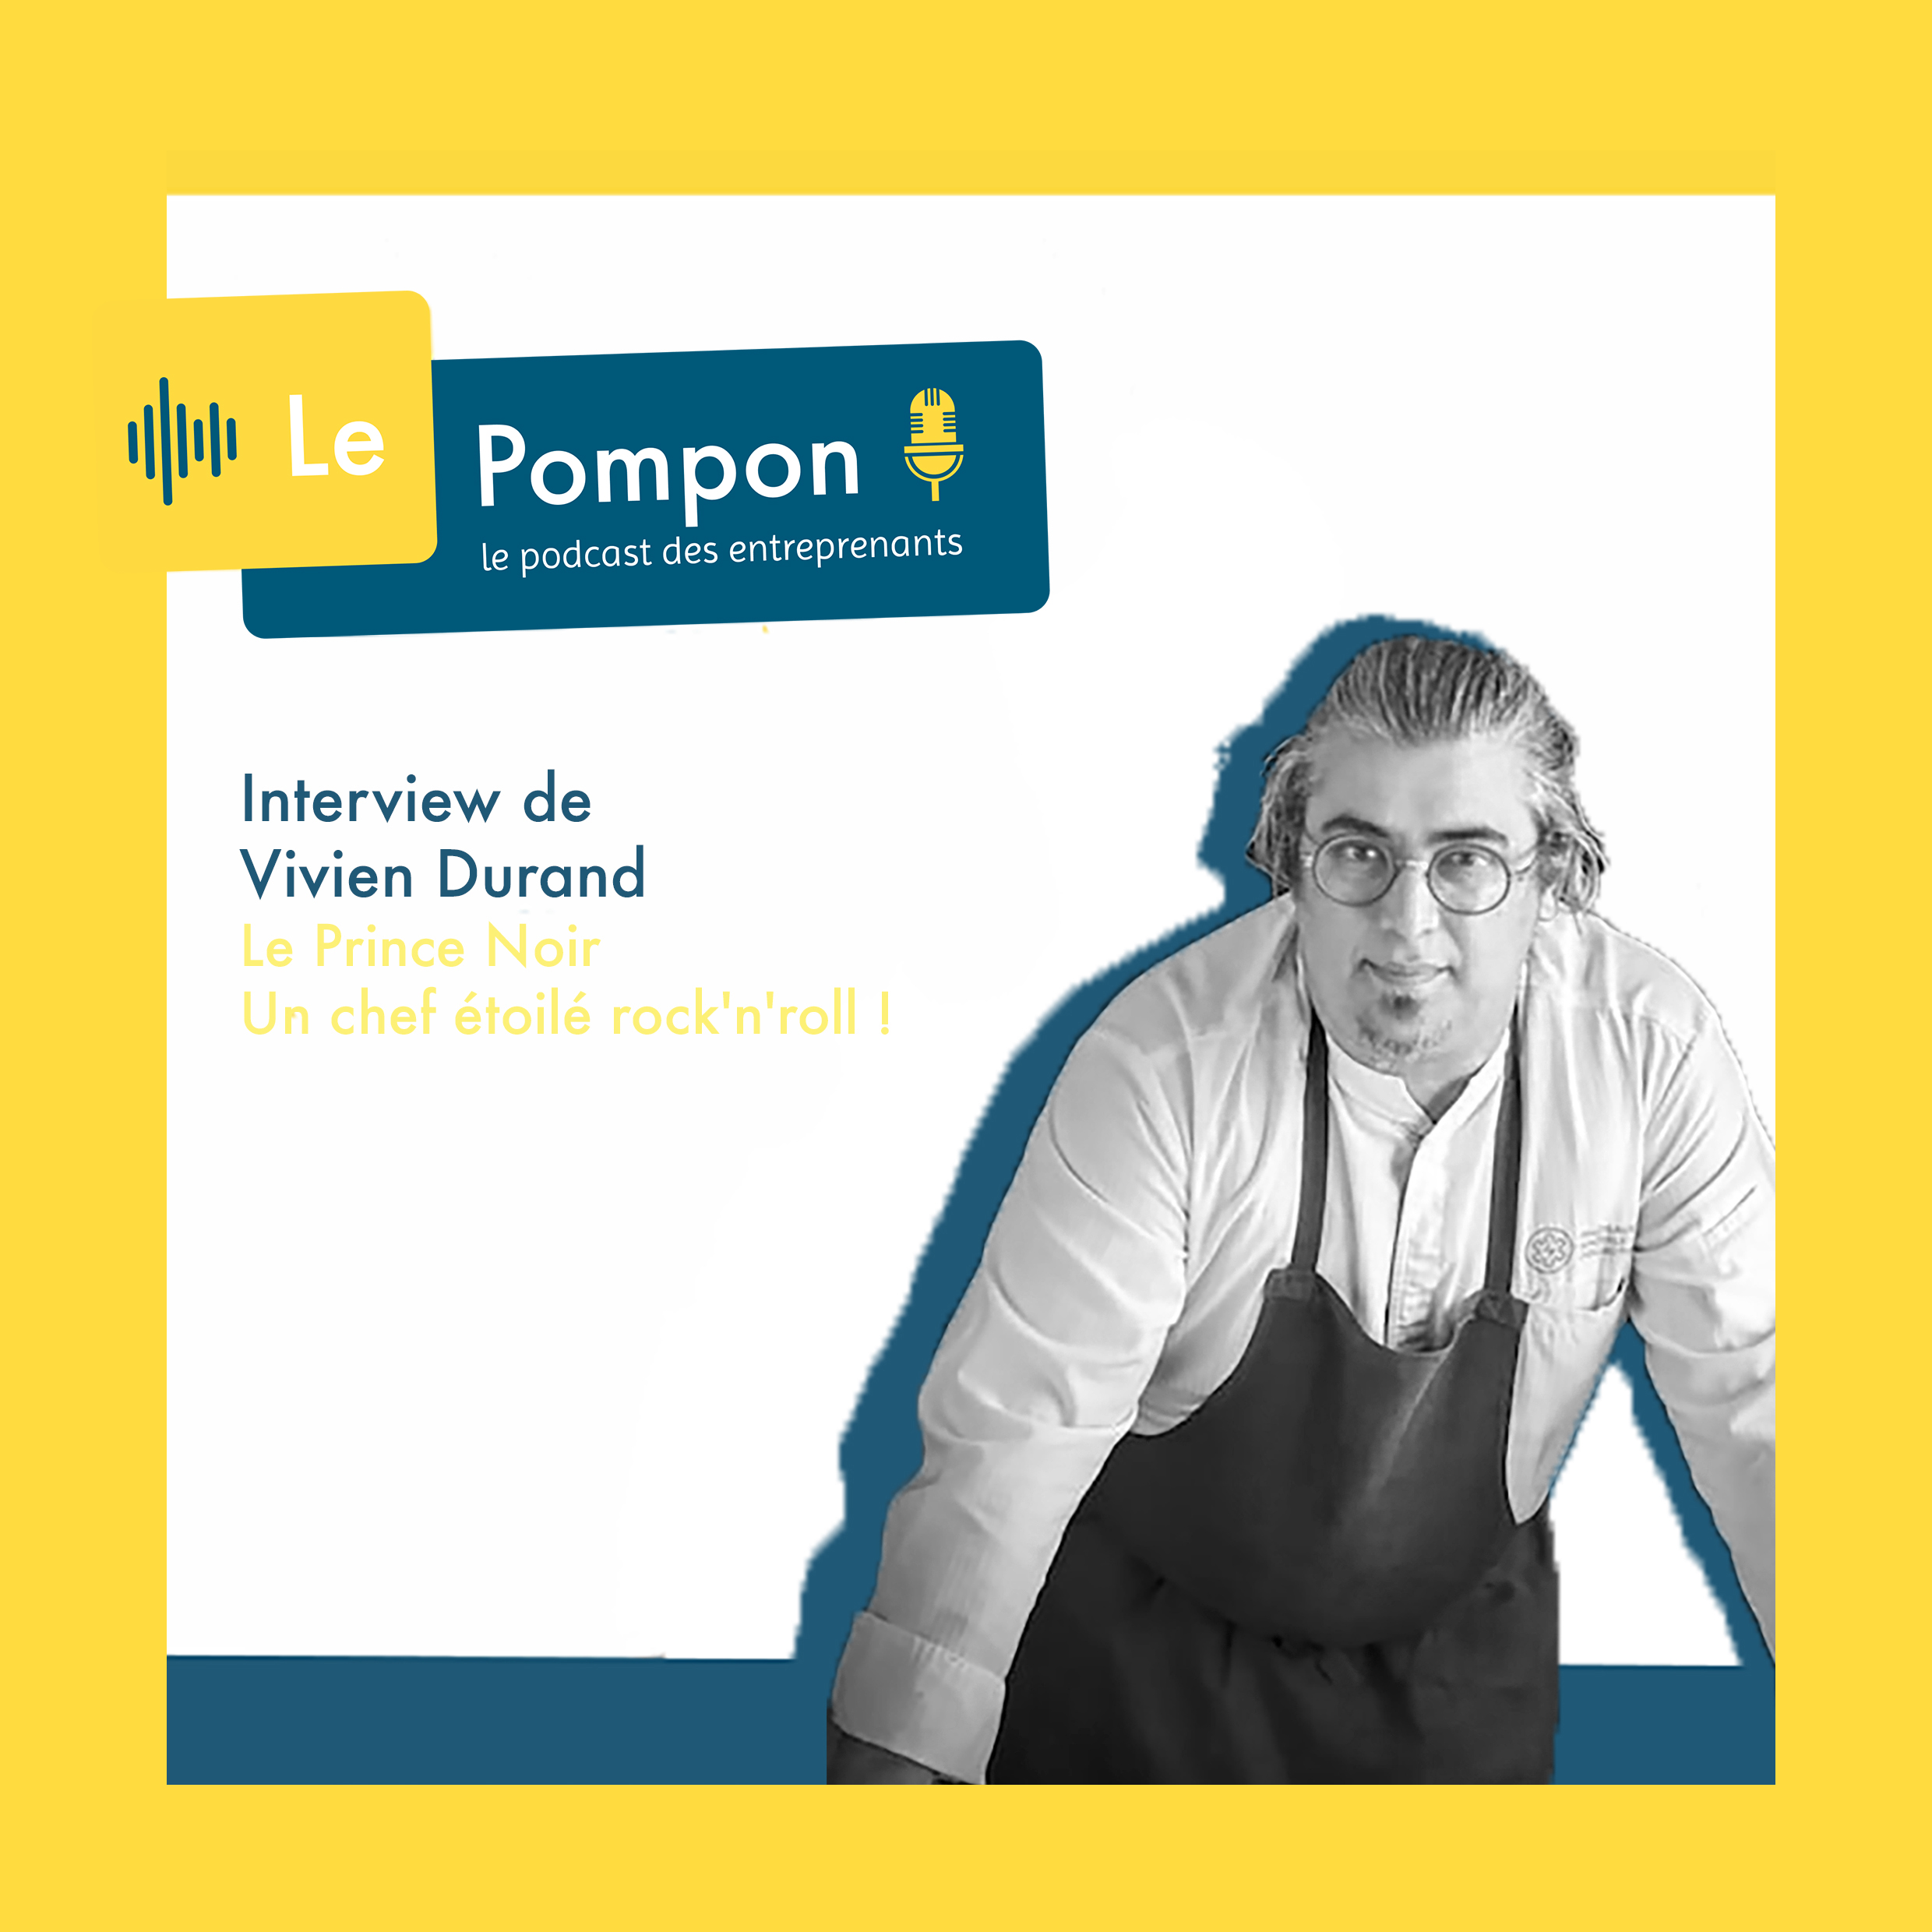 Illustration de l'épisode 10 du Podcast Le Pompon : Vivien Durand, Chef étoilé du Prince Noir